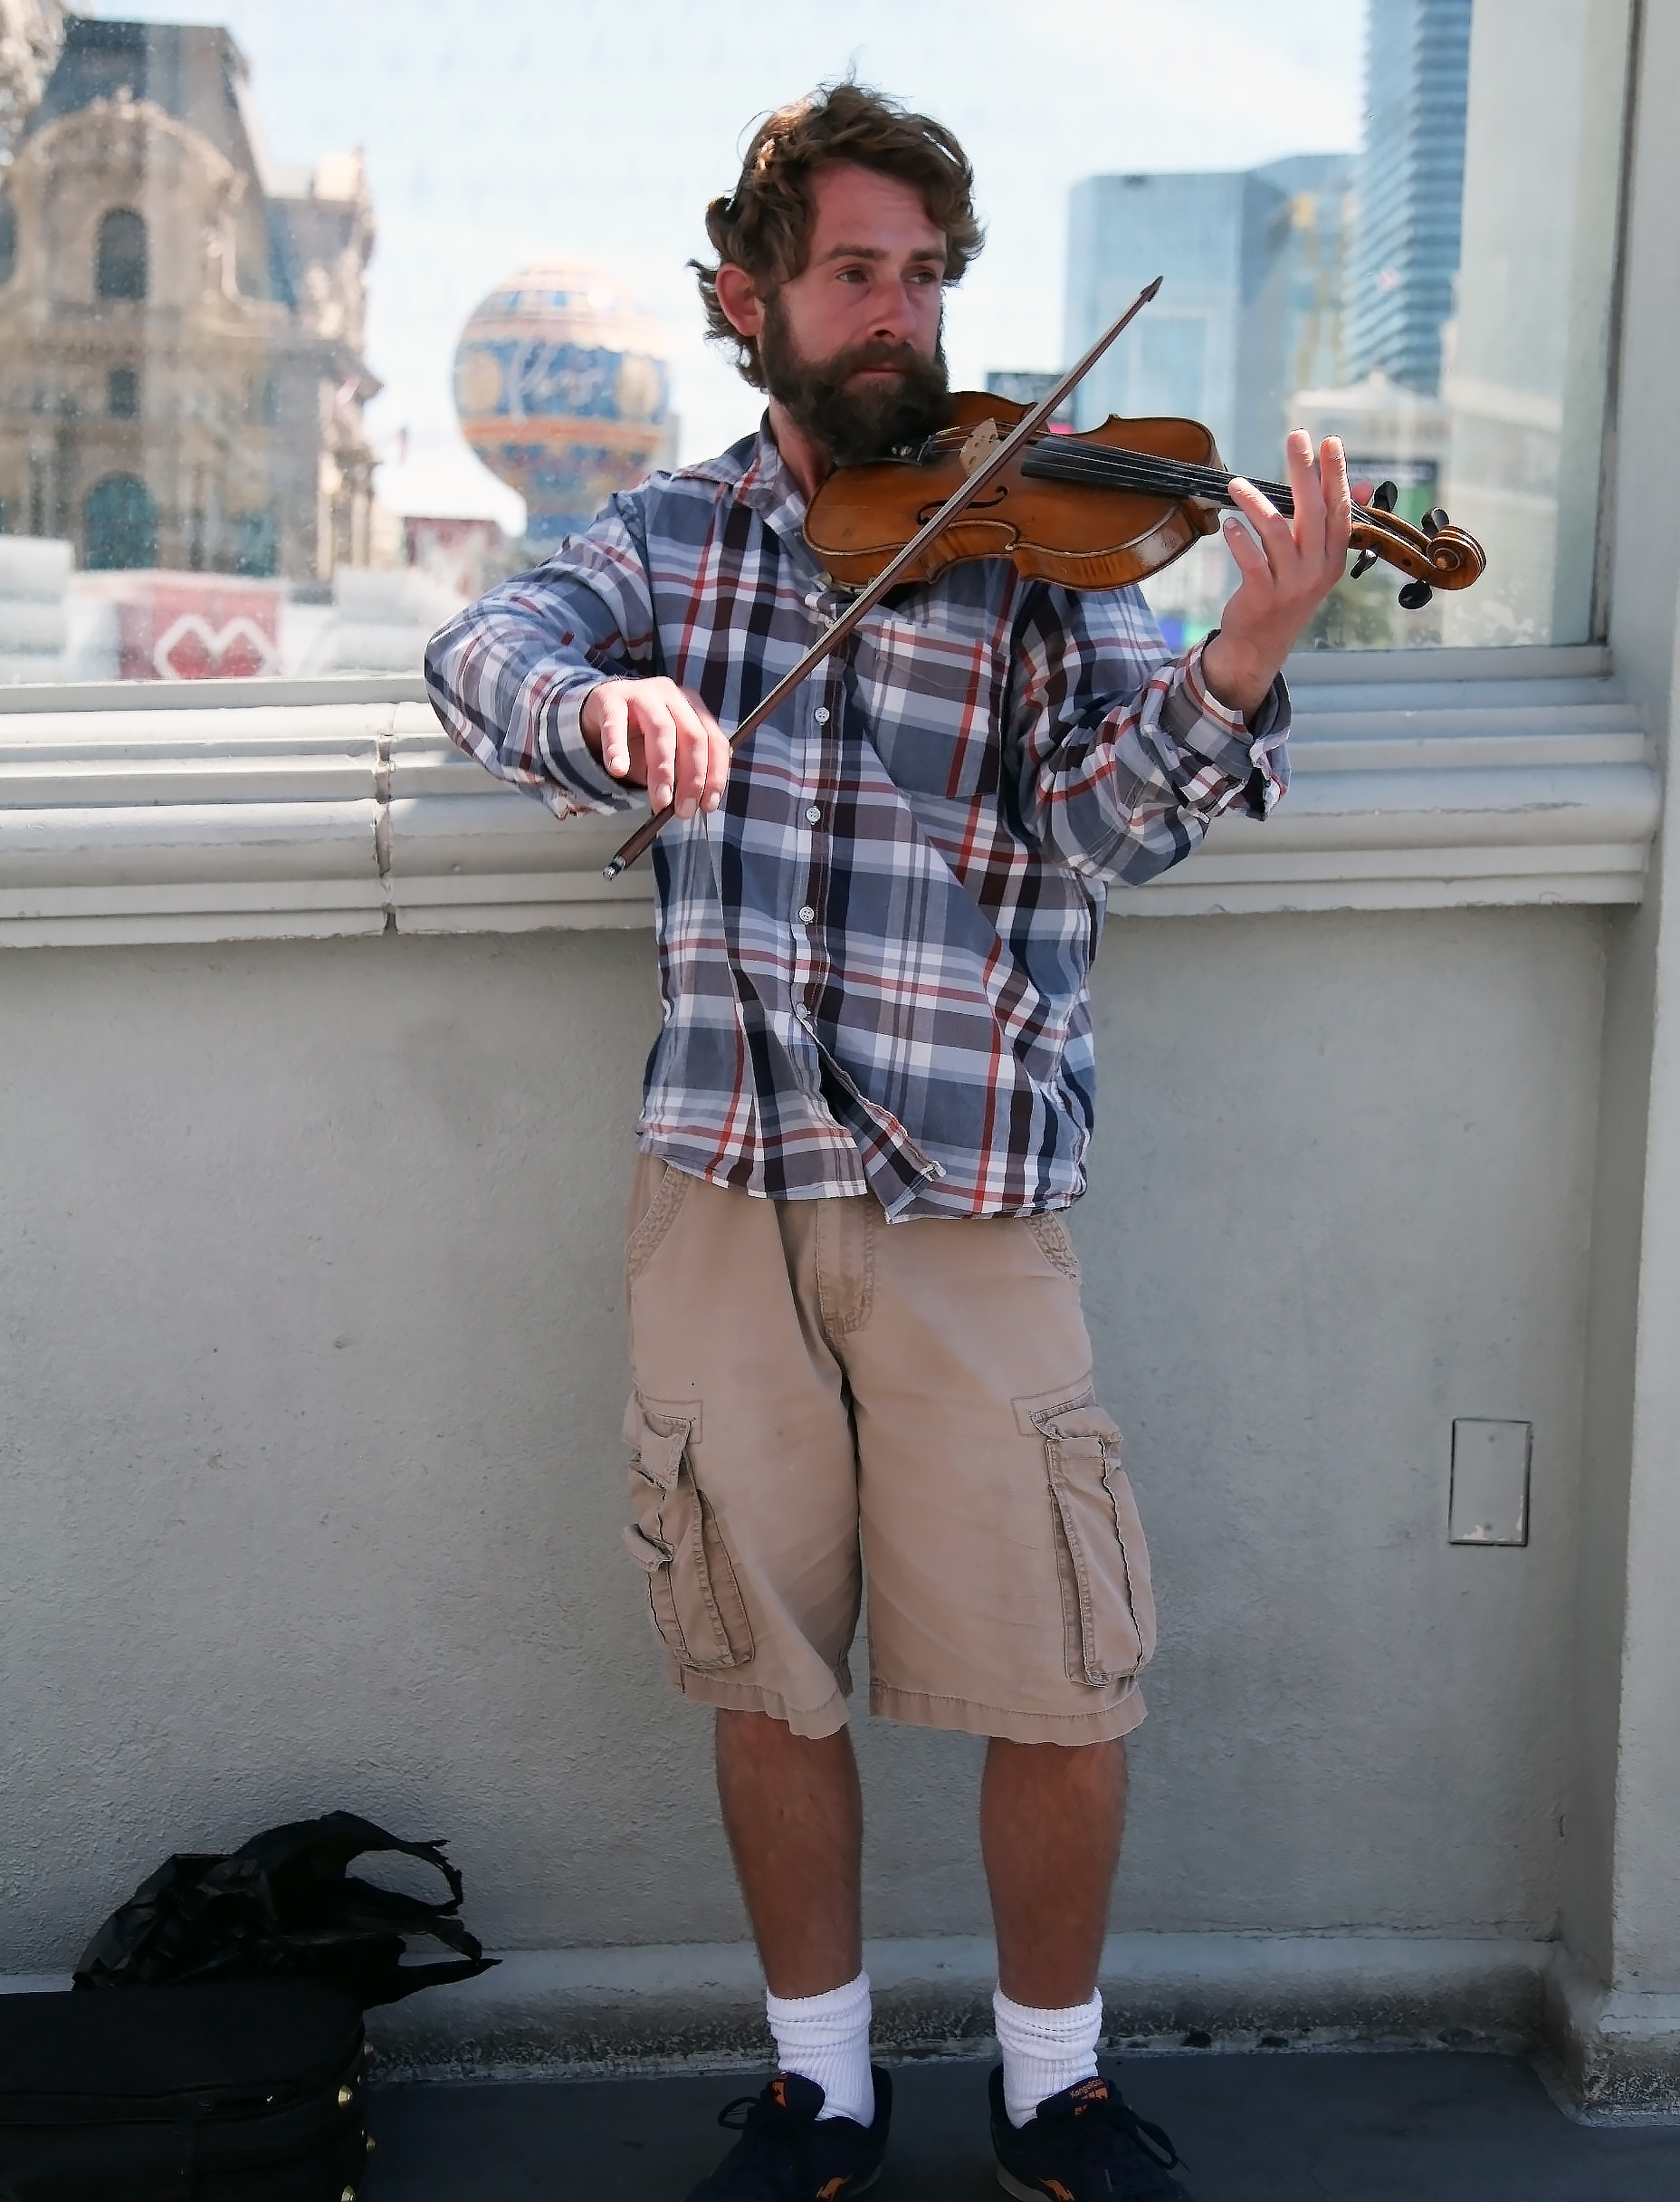 Las Vegas Violinist